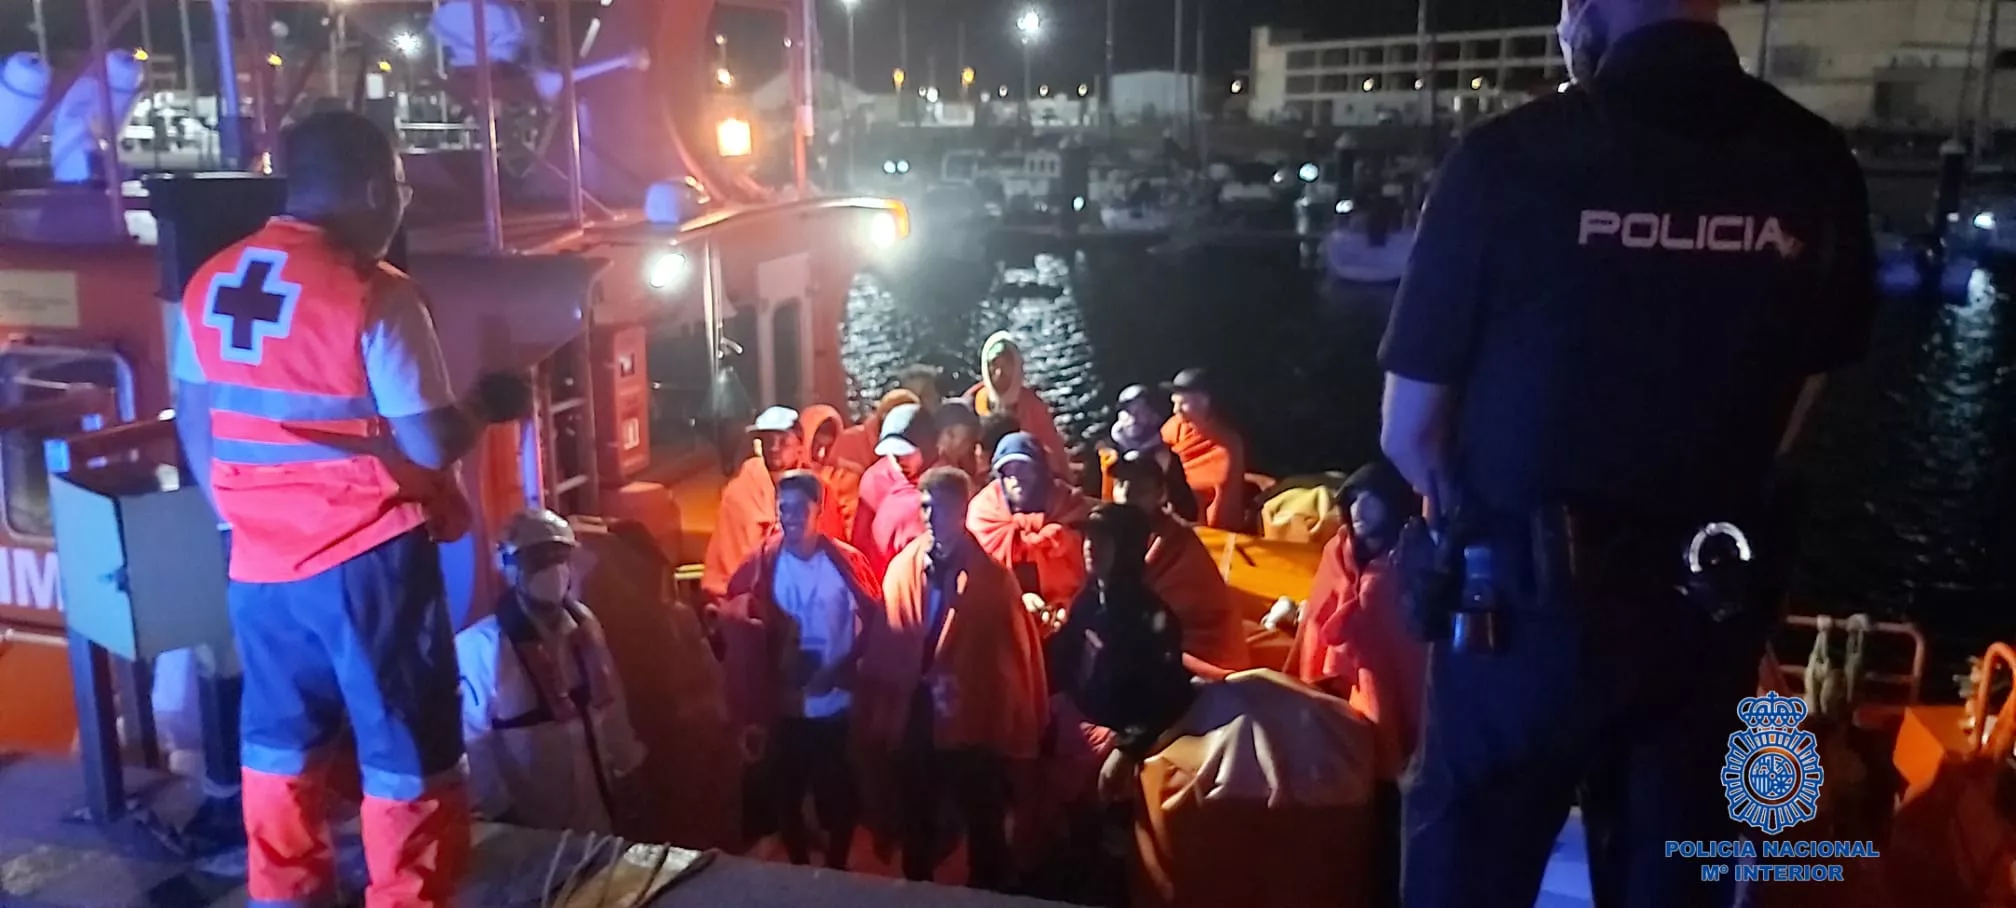 Salvamento Marítimo ha conducido a Puerto América a los 16 marroquíes rescatados que viajaban en una patera